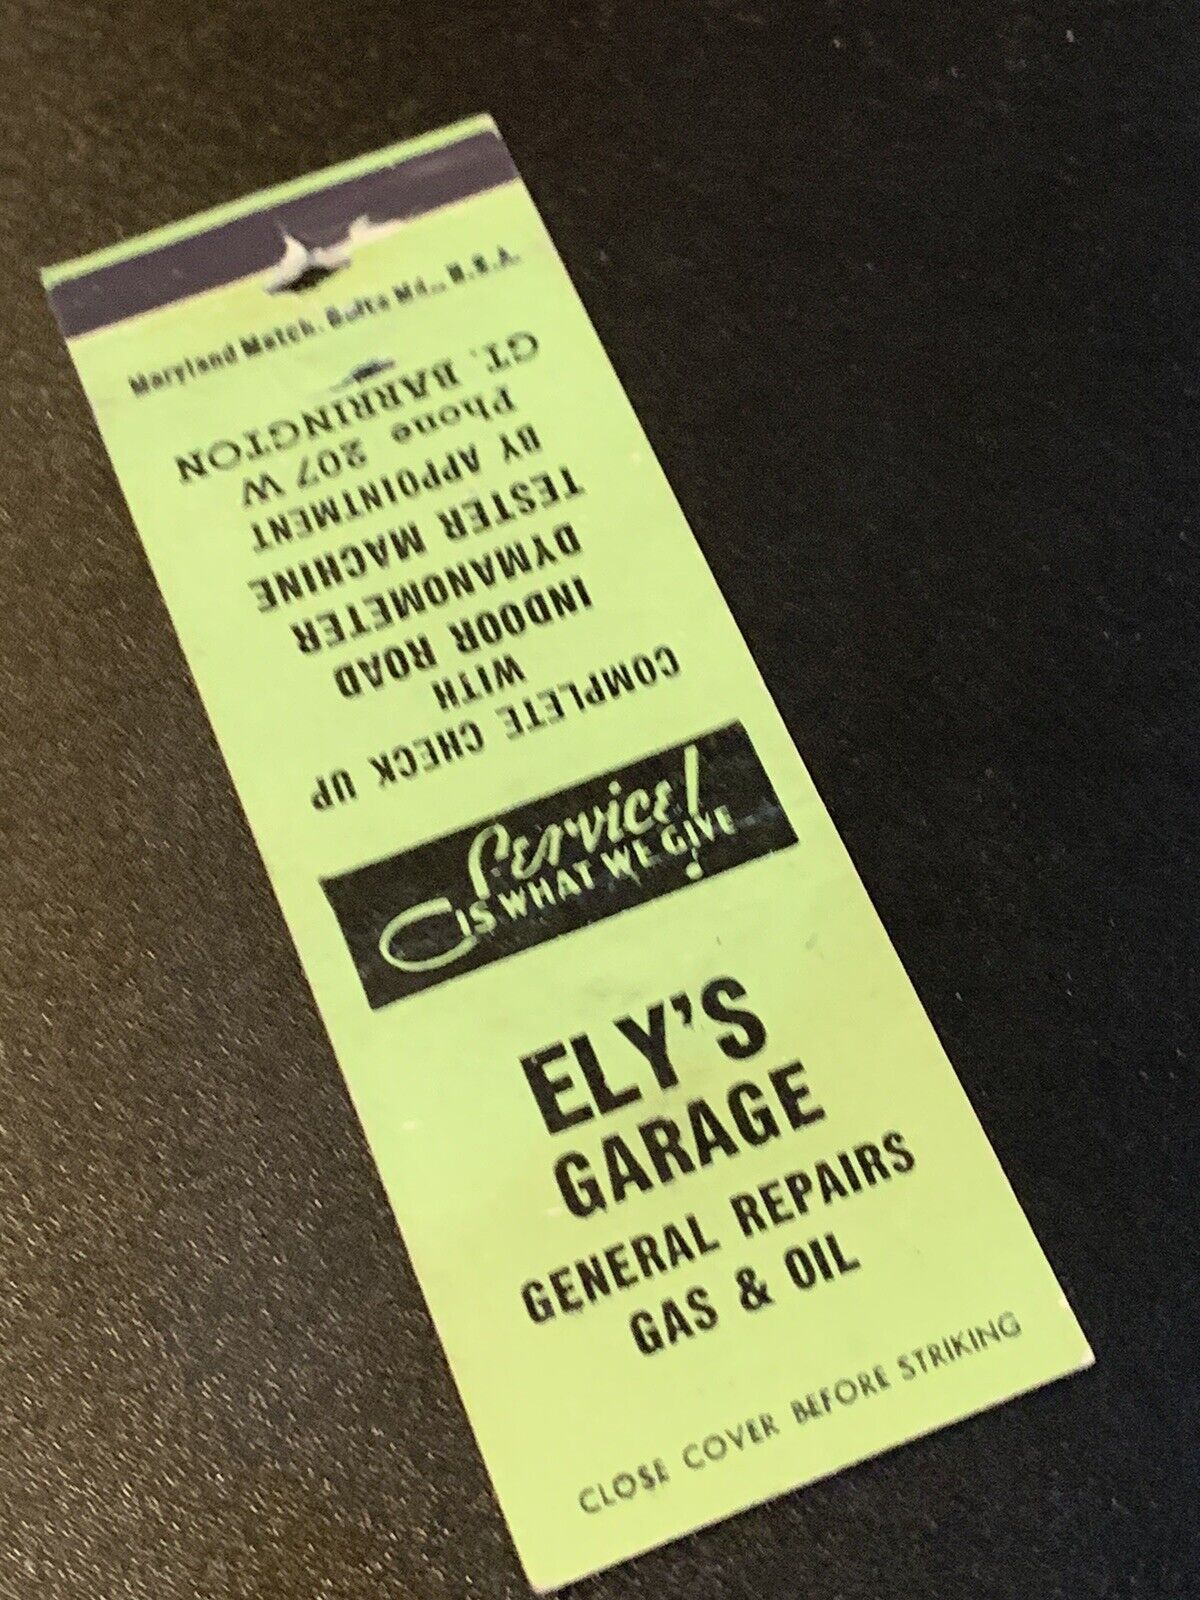 Vintage Matchbook: “Ely’s Garage”